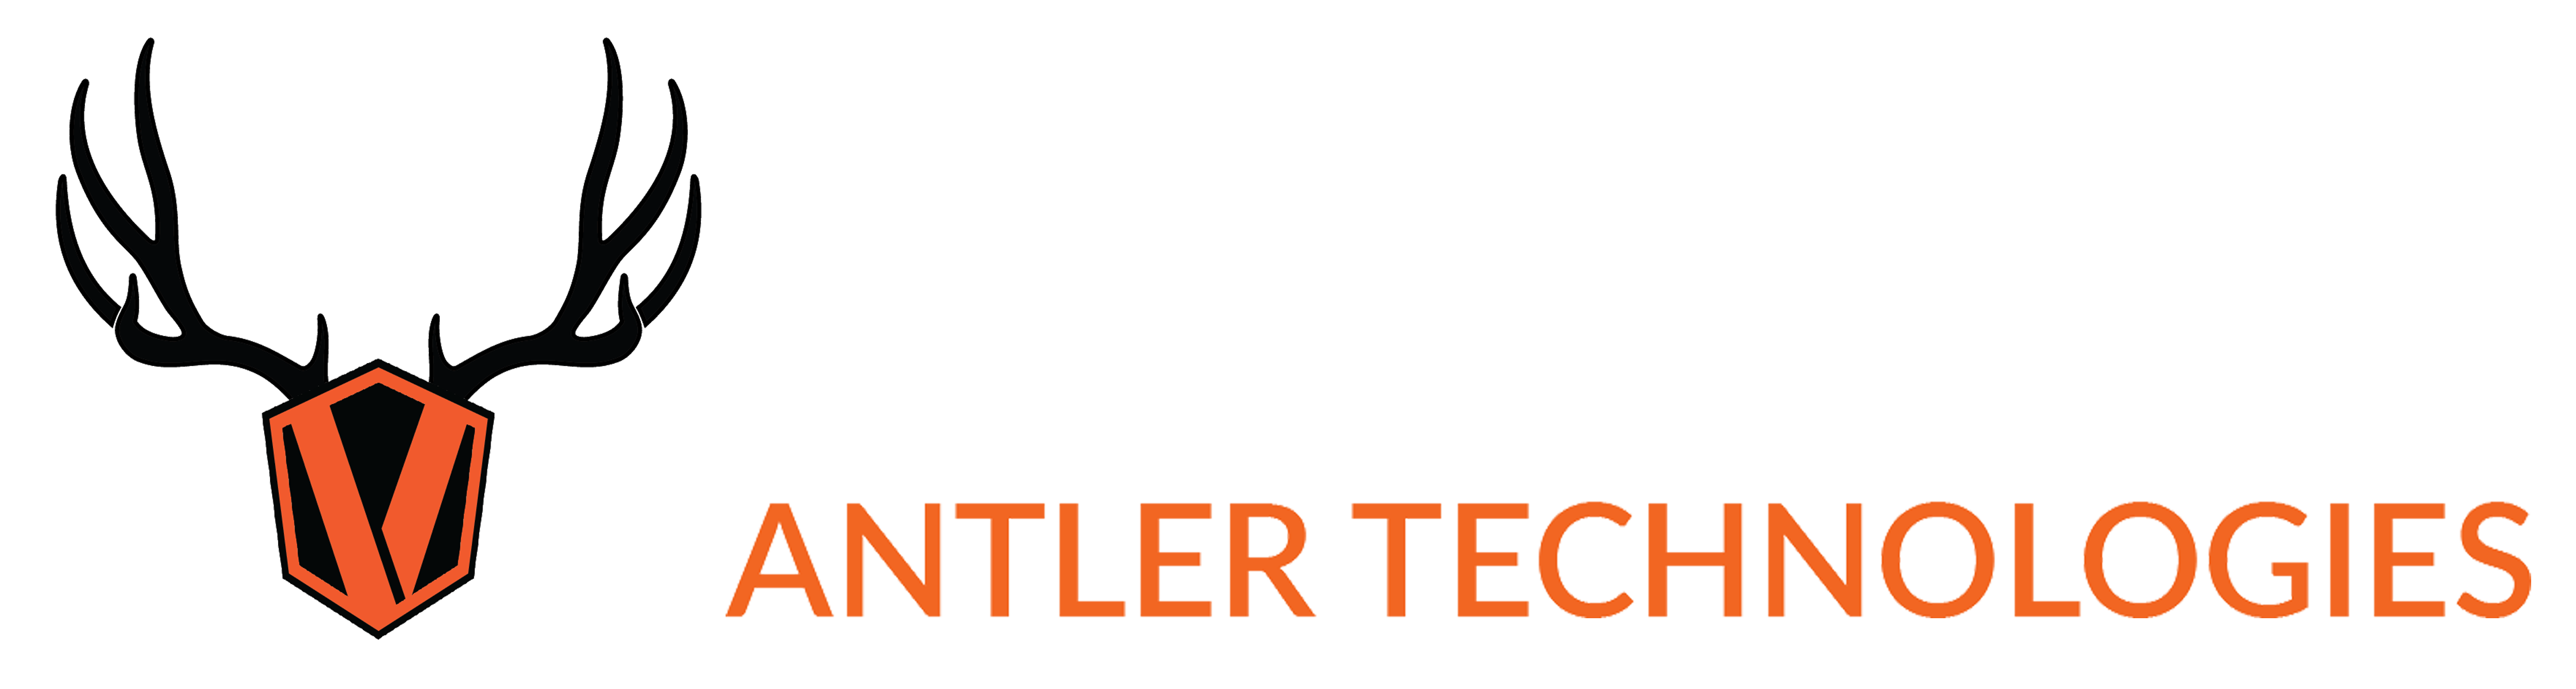 Velvet Antler Technologies